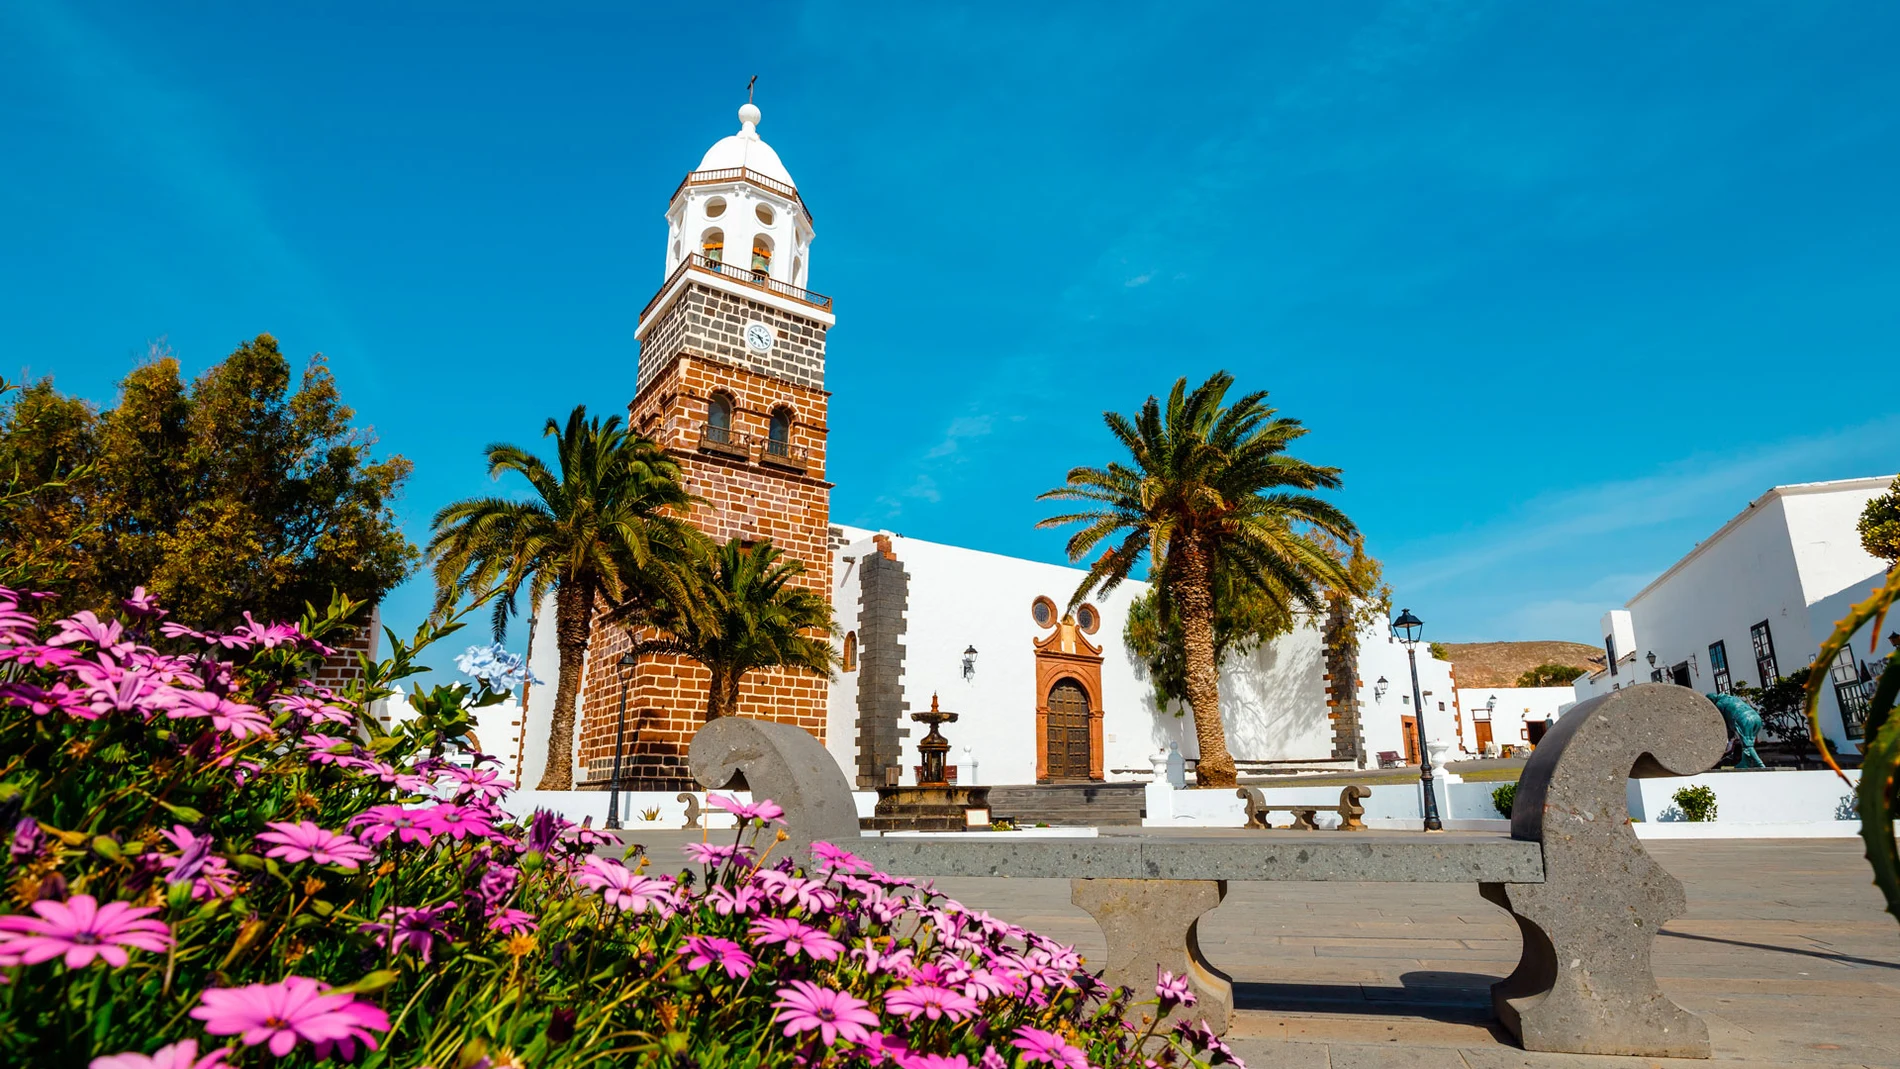 Imagen de Teguise (Lanzarote).